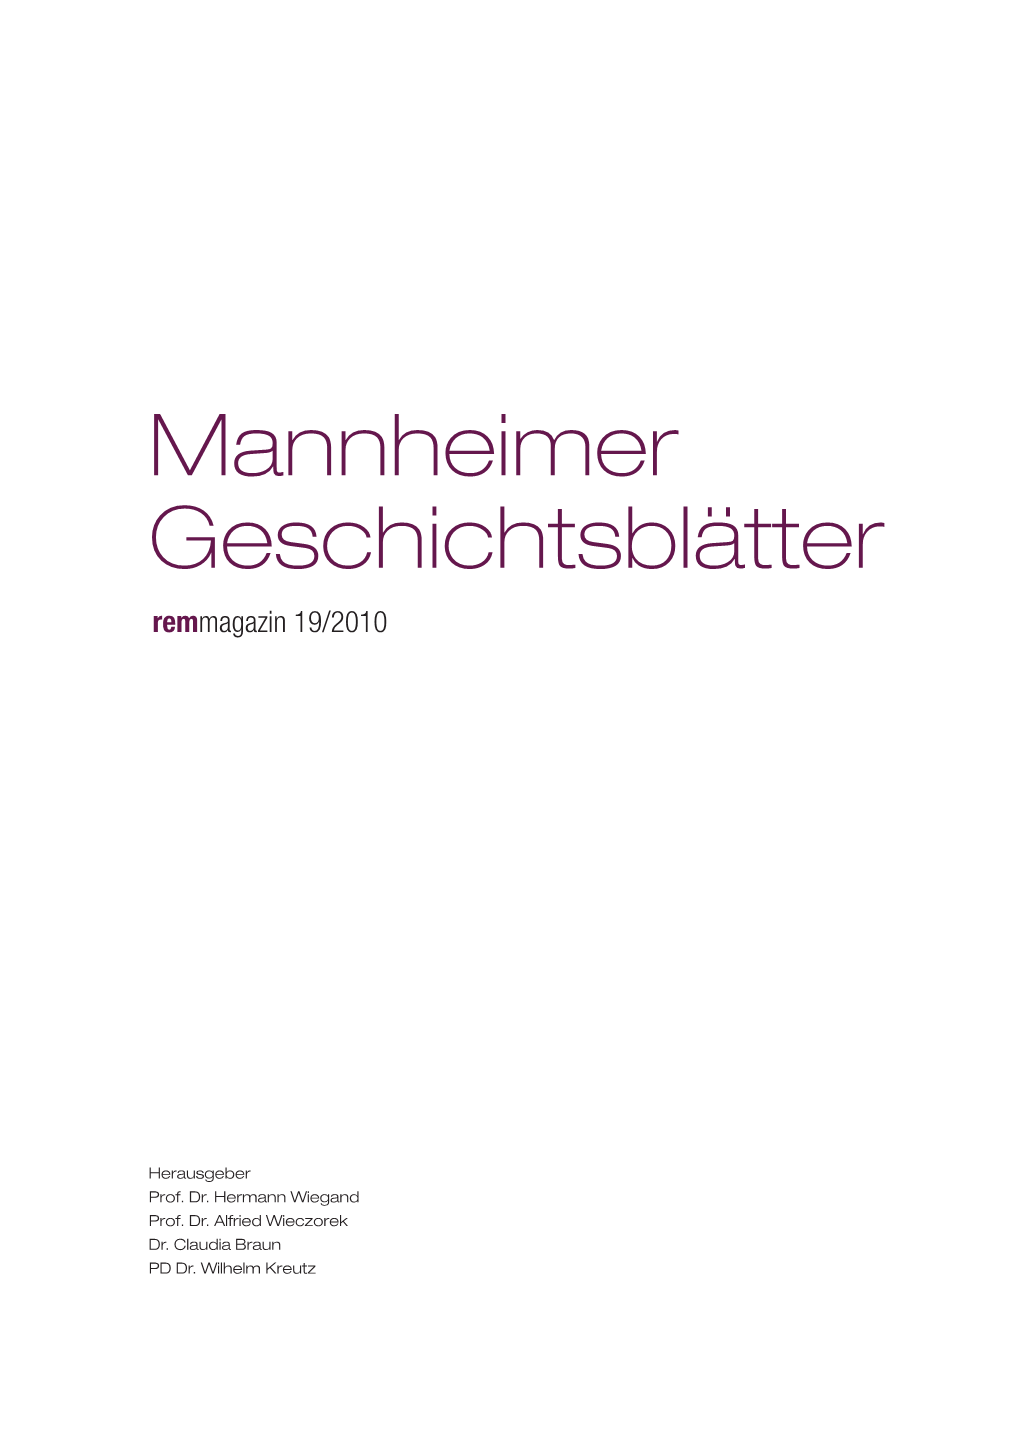 Mannheimer Geschichtsblätter Remmagazin 19/2010